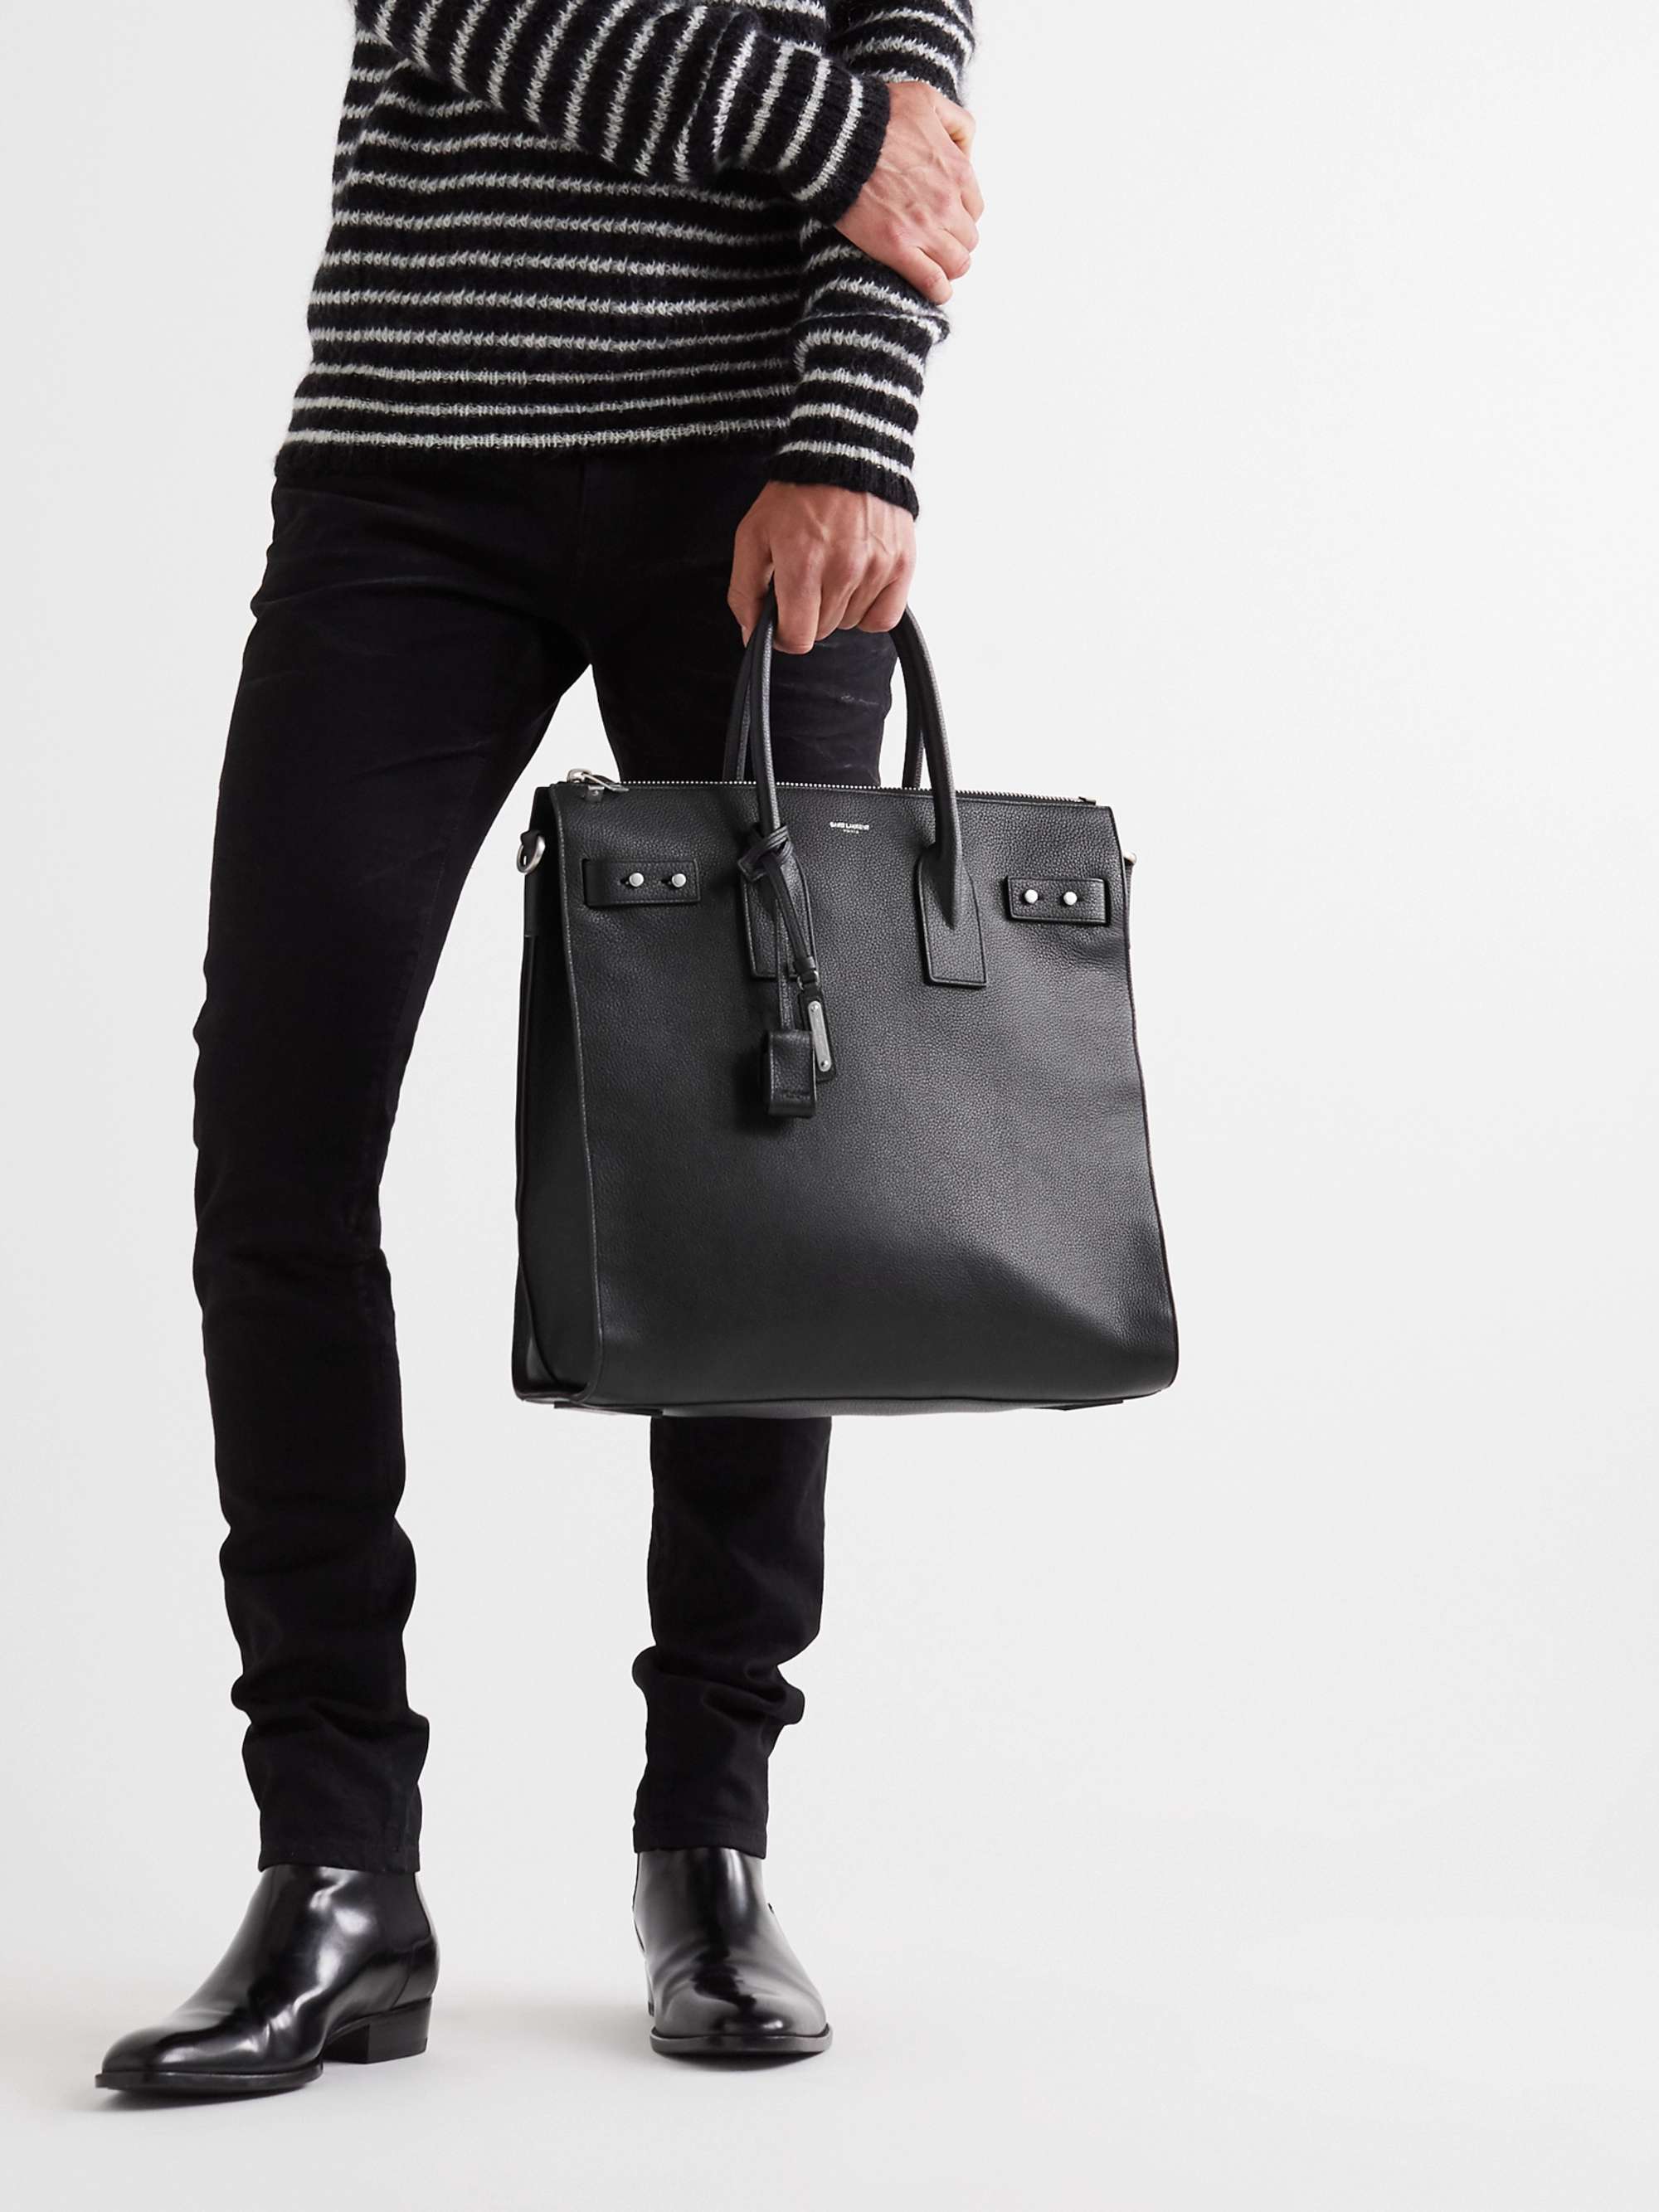 Saint Laurent Men's Sac de Jour Thin Large Leather Bag